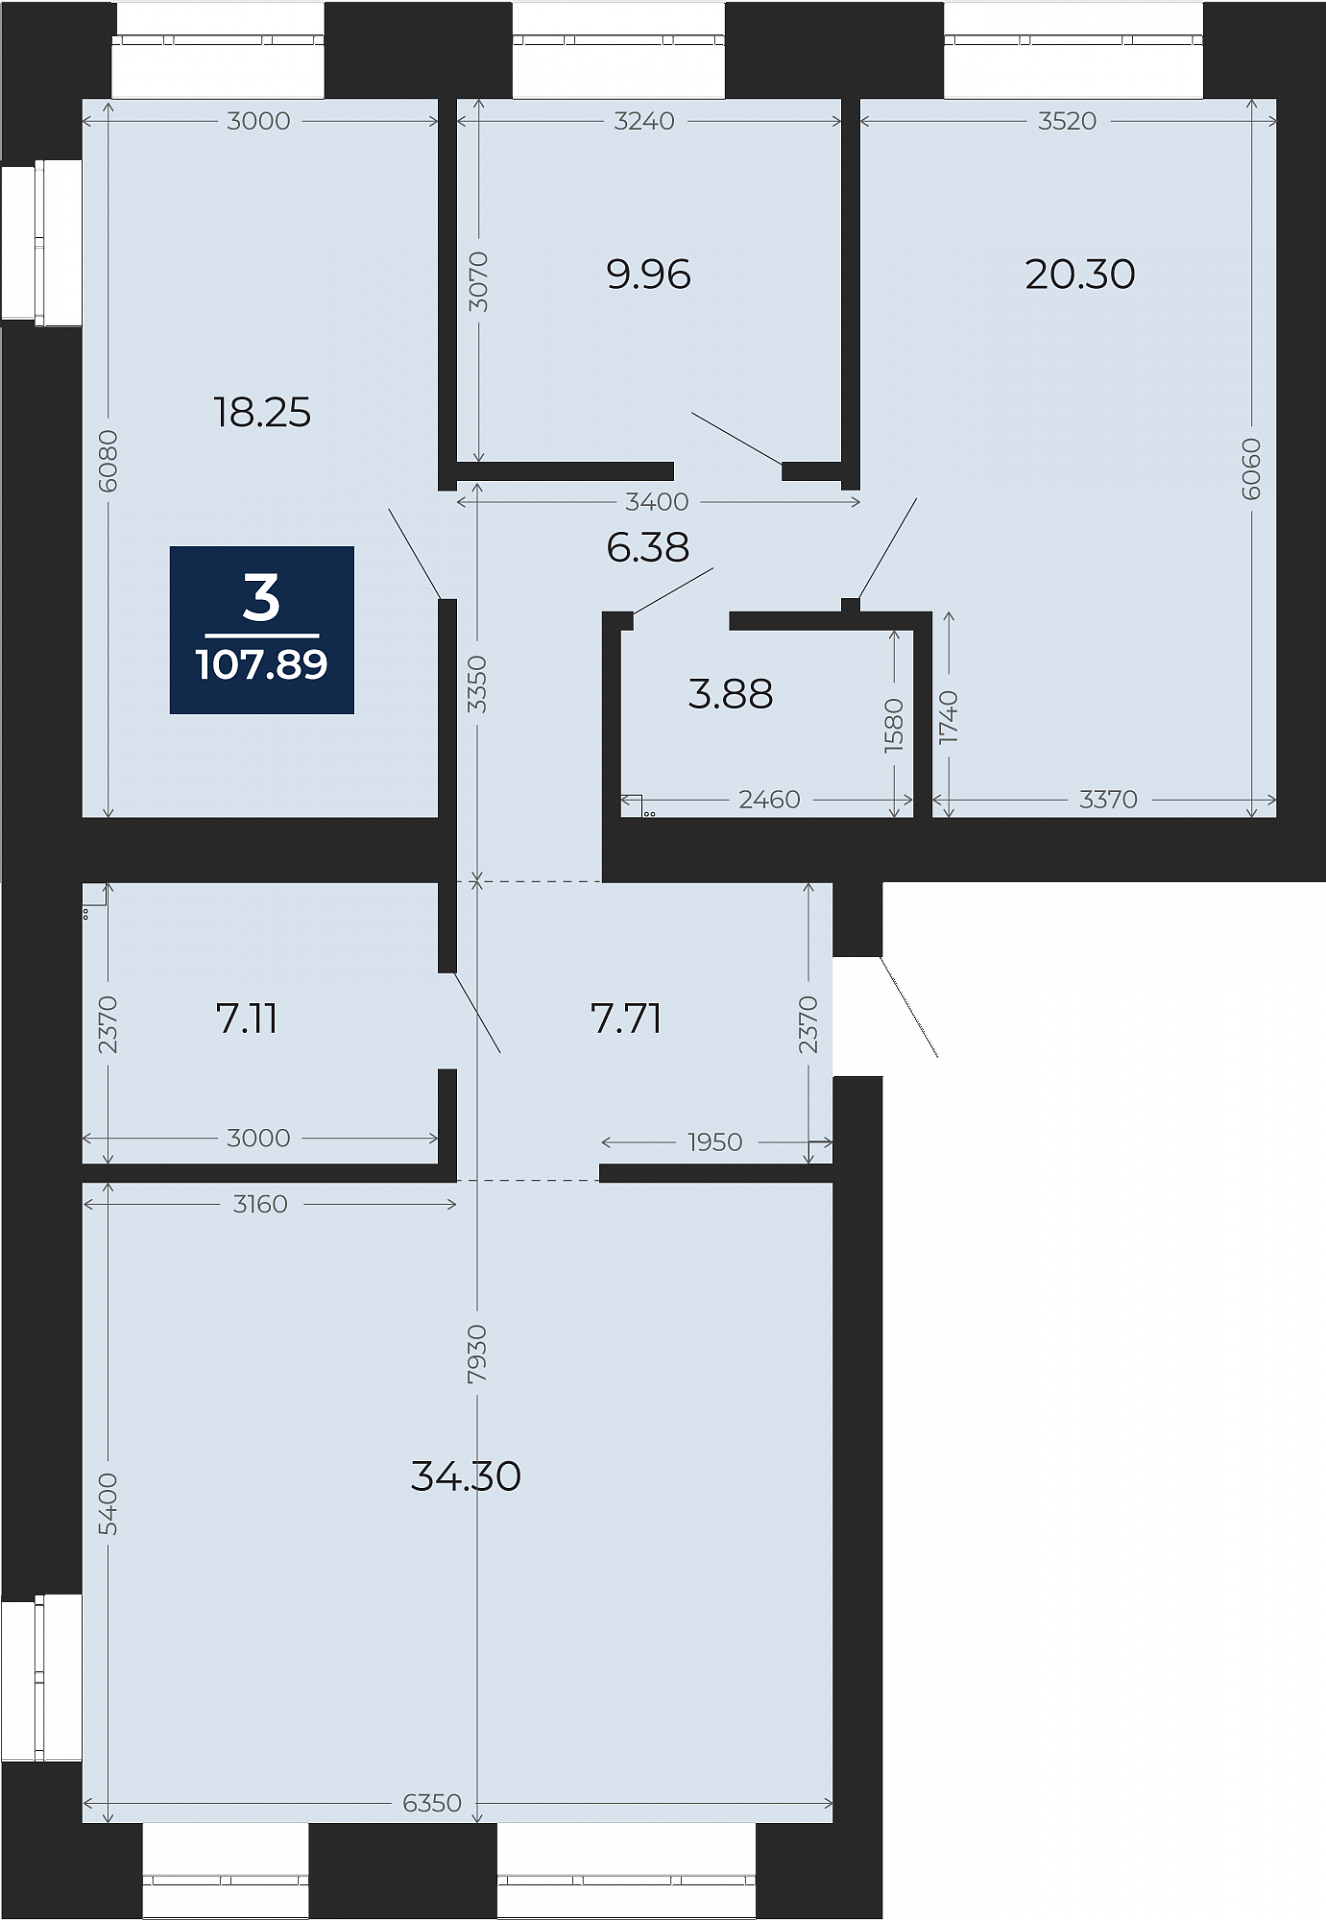 Квартира № 195, 3-комнатная, 107.89 кв. м, 2 этаж